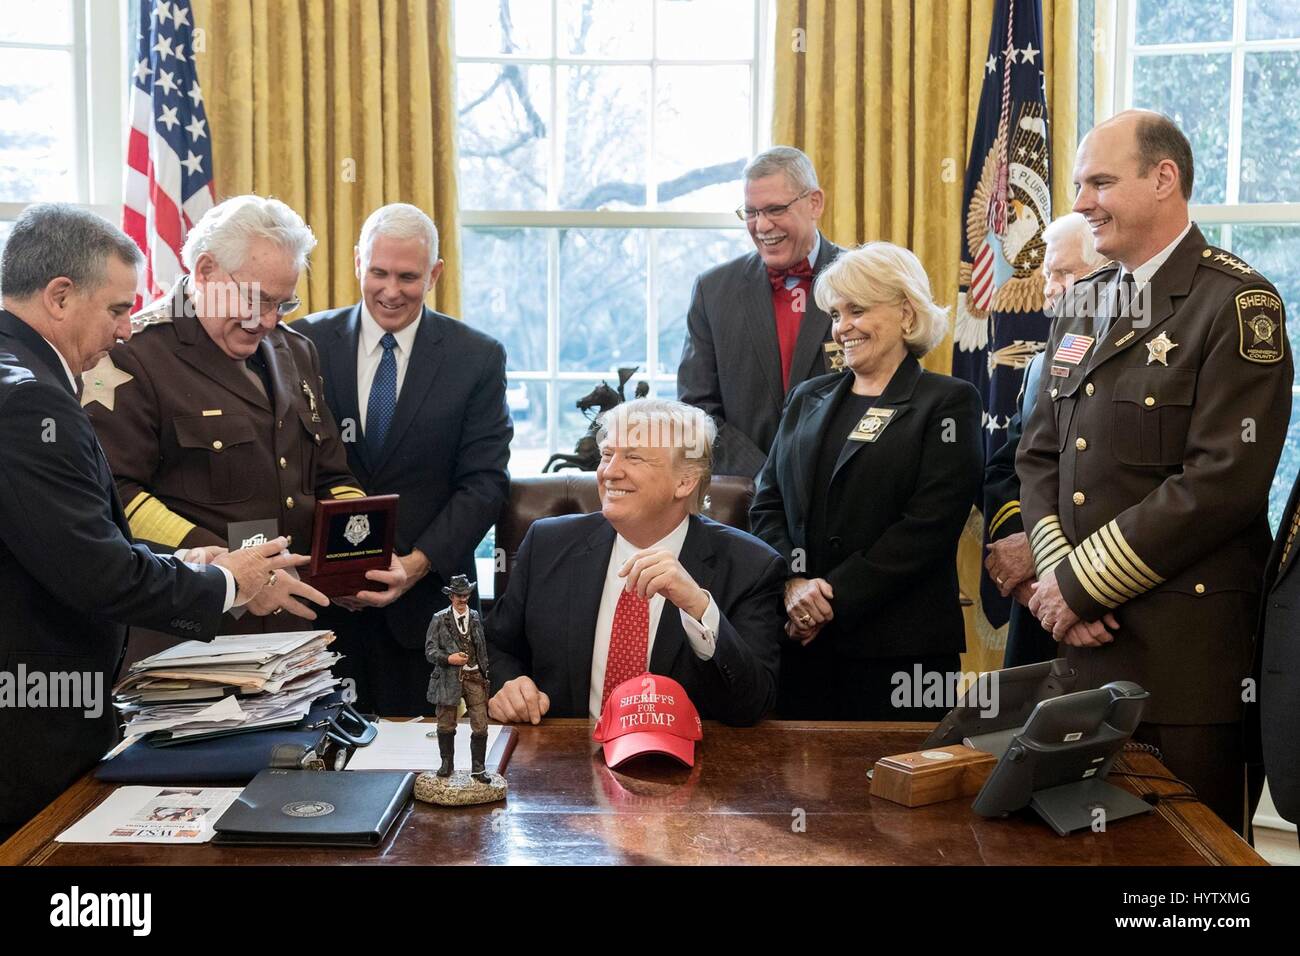 U.S presidente Donald Trump condivide un ridere con sceriffi provenienti da tutto il paese nel corso di una sessione di ascolto nell'Ufficio Ovale della Casa Bianca il 7 febbraio 2017 a Washington, DC. In piedi dietro il presidente è Vice Presidente Mike Pence. Foto Stock